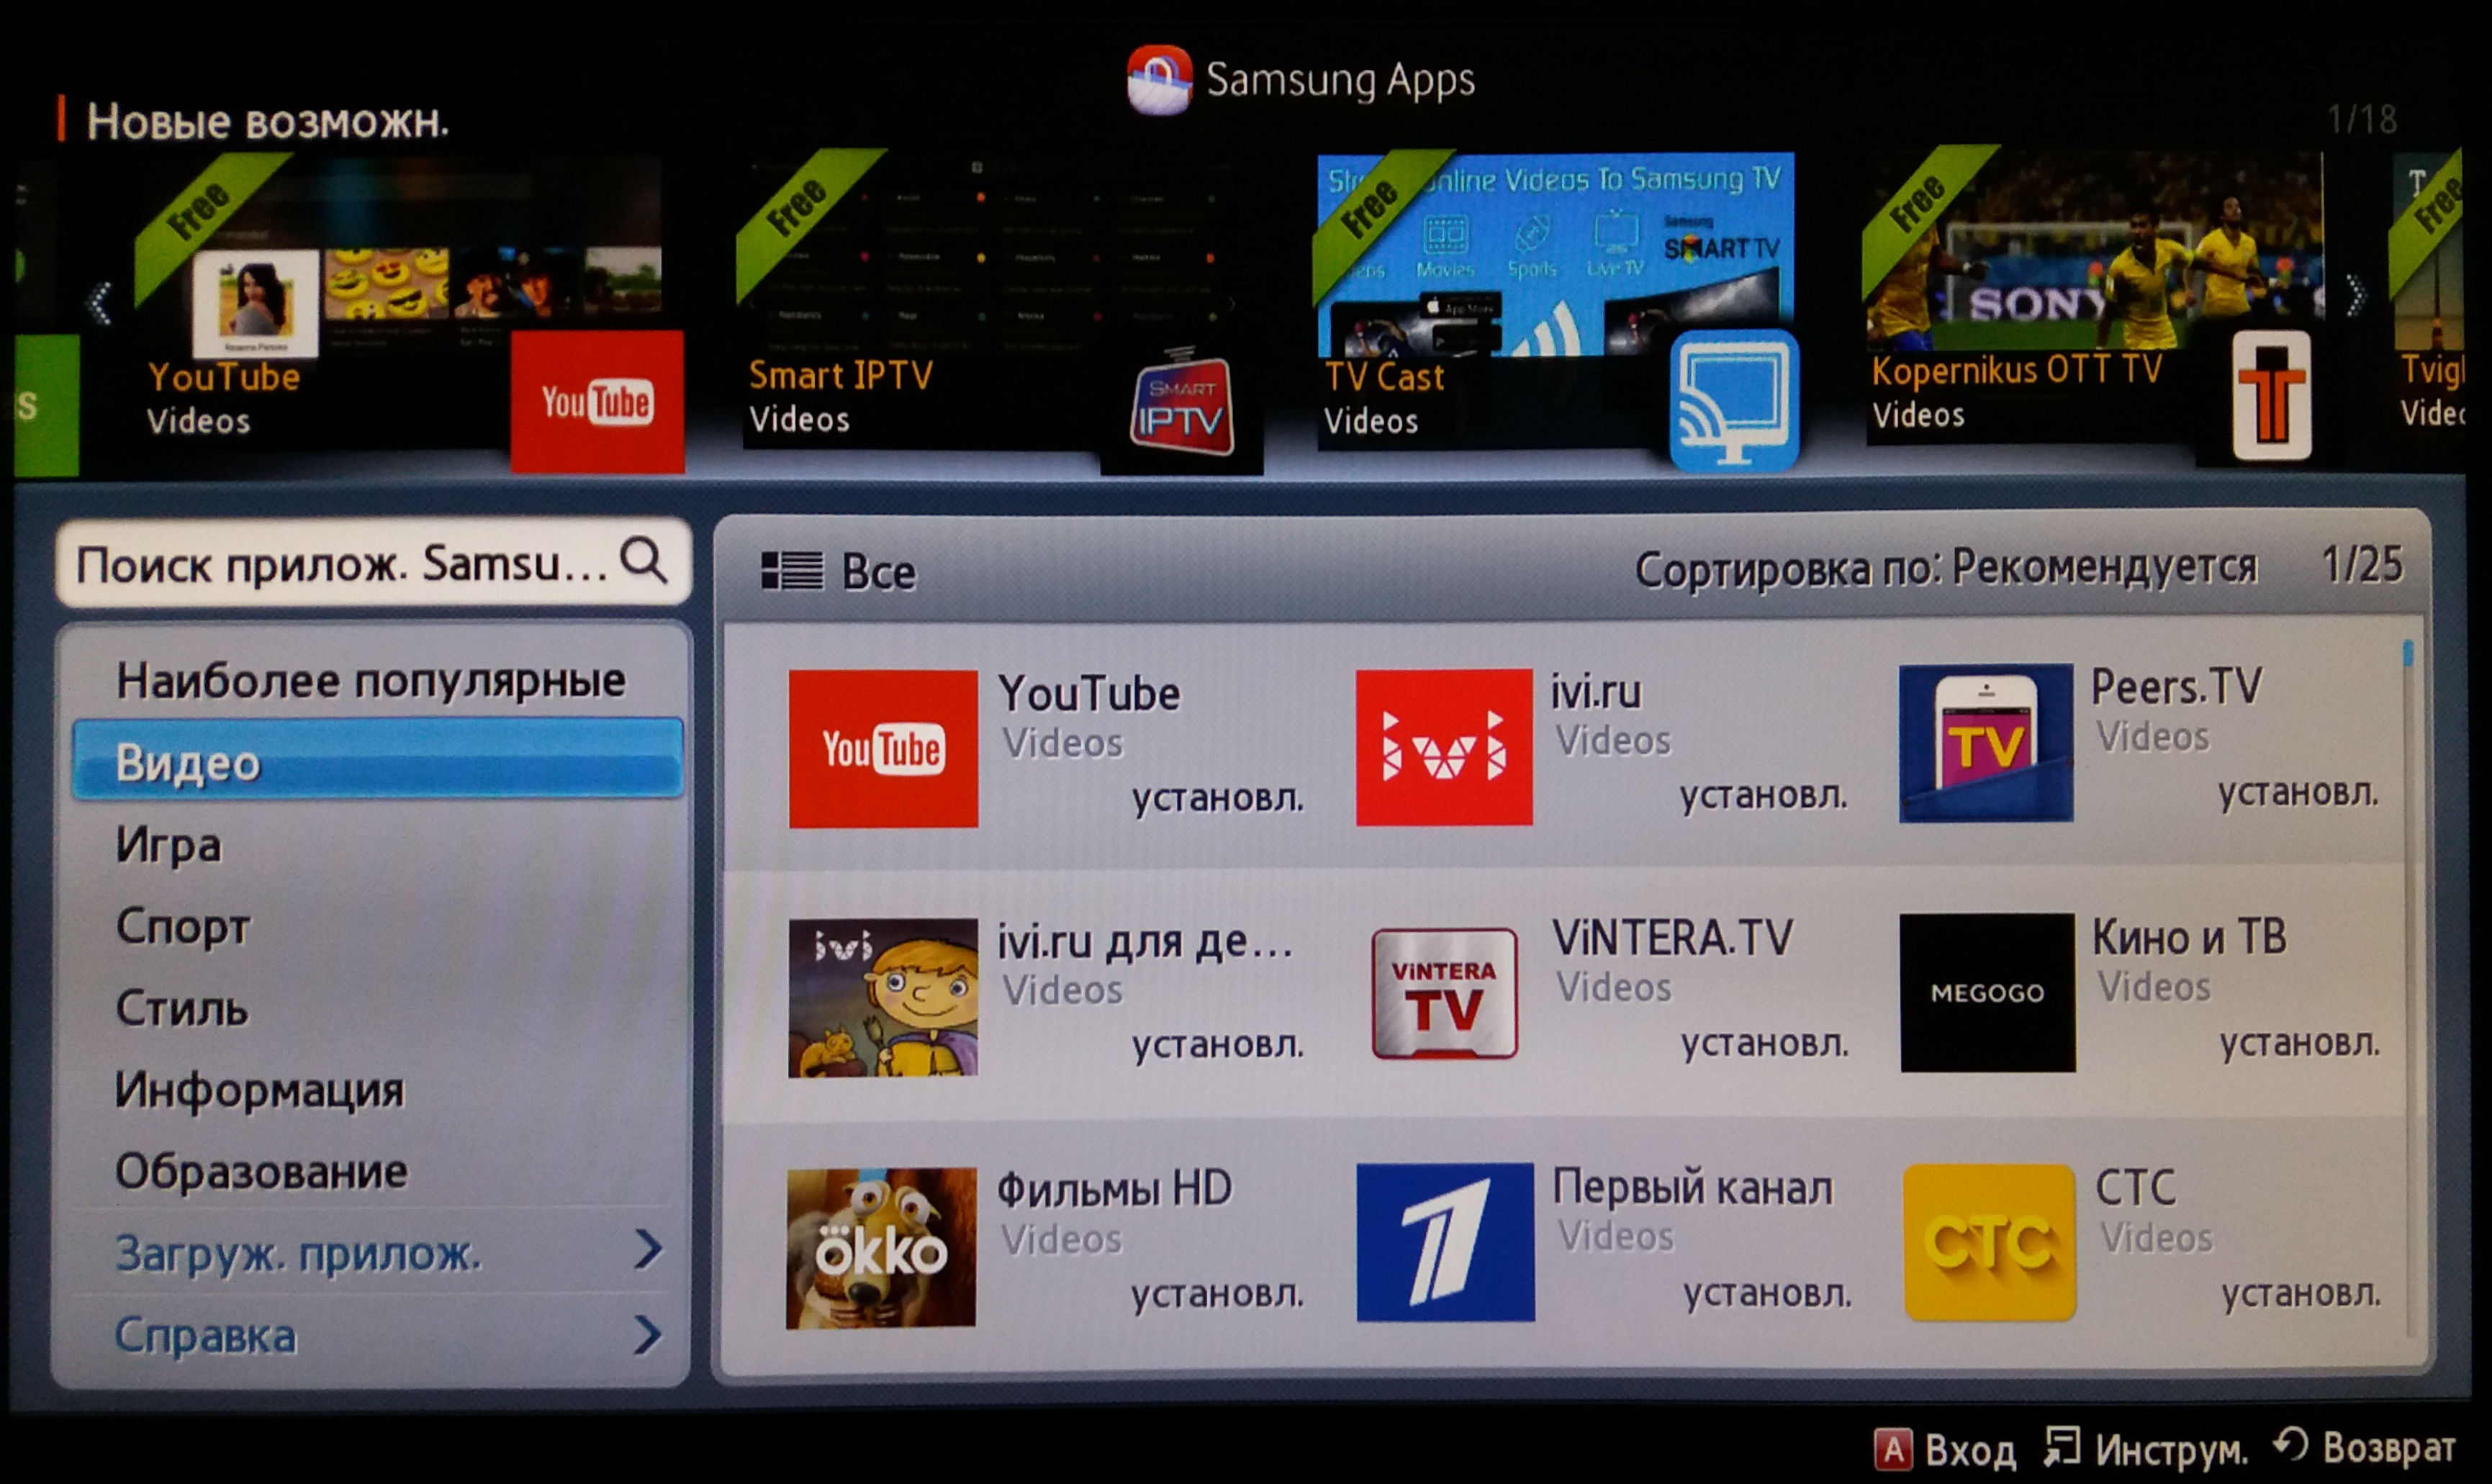 Программа для просмотра на телевизоре с телефона. Samsung телевизор Smart TV 2013. Телевизор самсунг с ютубом. Как установить приложение на телевизор. Samsung apps на телевизоре.